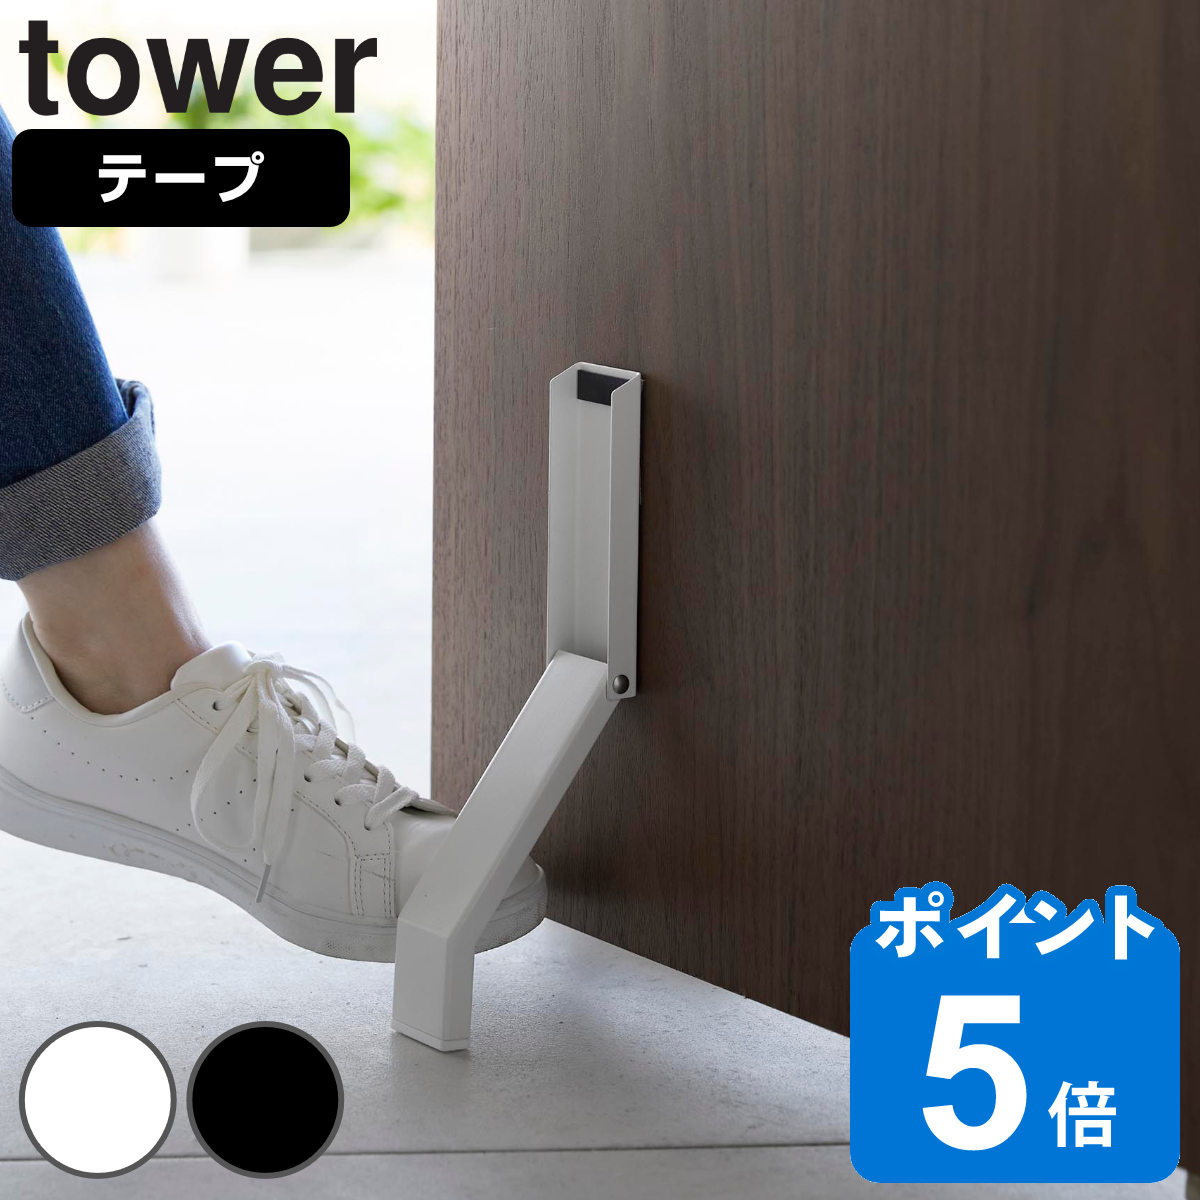 山崎実業 tower テープで貼りつける折り畳みドアストッパー タワー